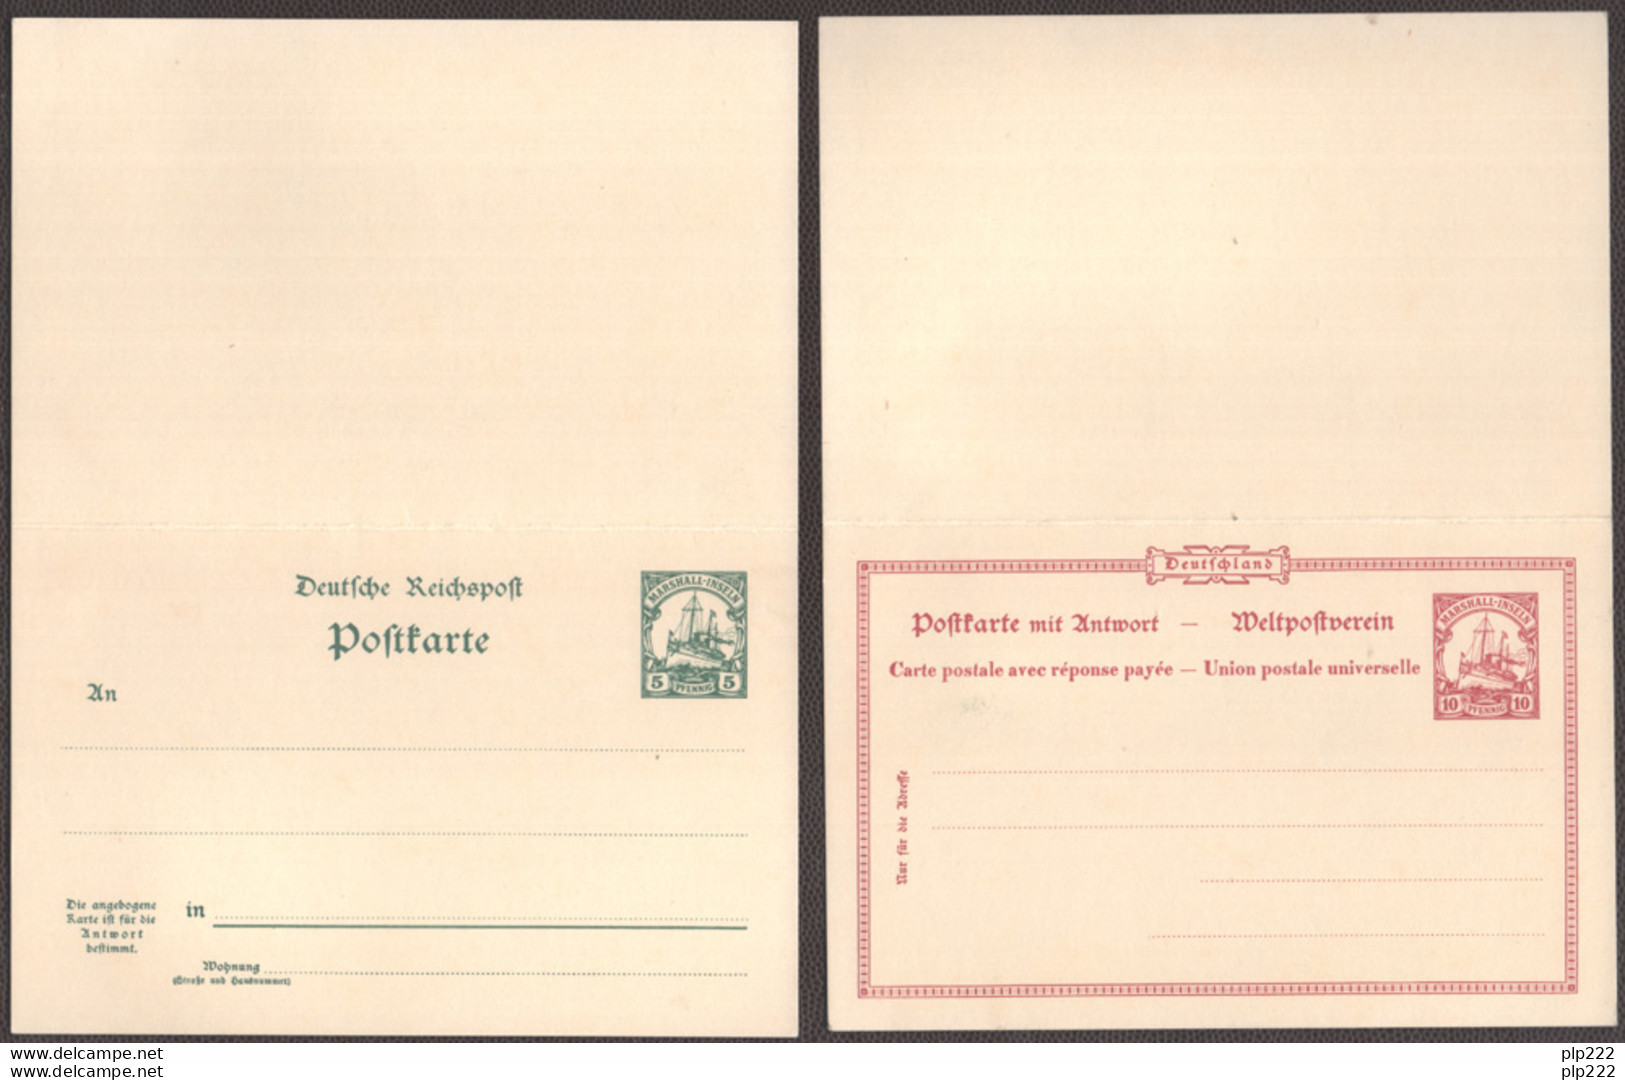 Isole Marshall 1900 2 Postal Card "Postkarte" 5-10pf. Risposta Pagata - Paid Response VF - Islas Marshall